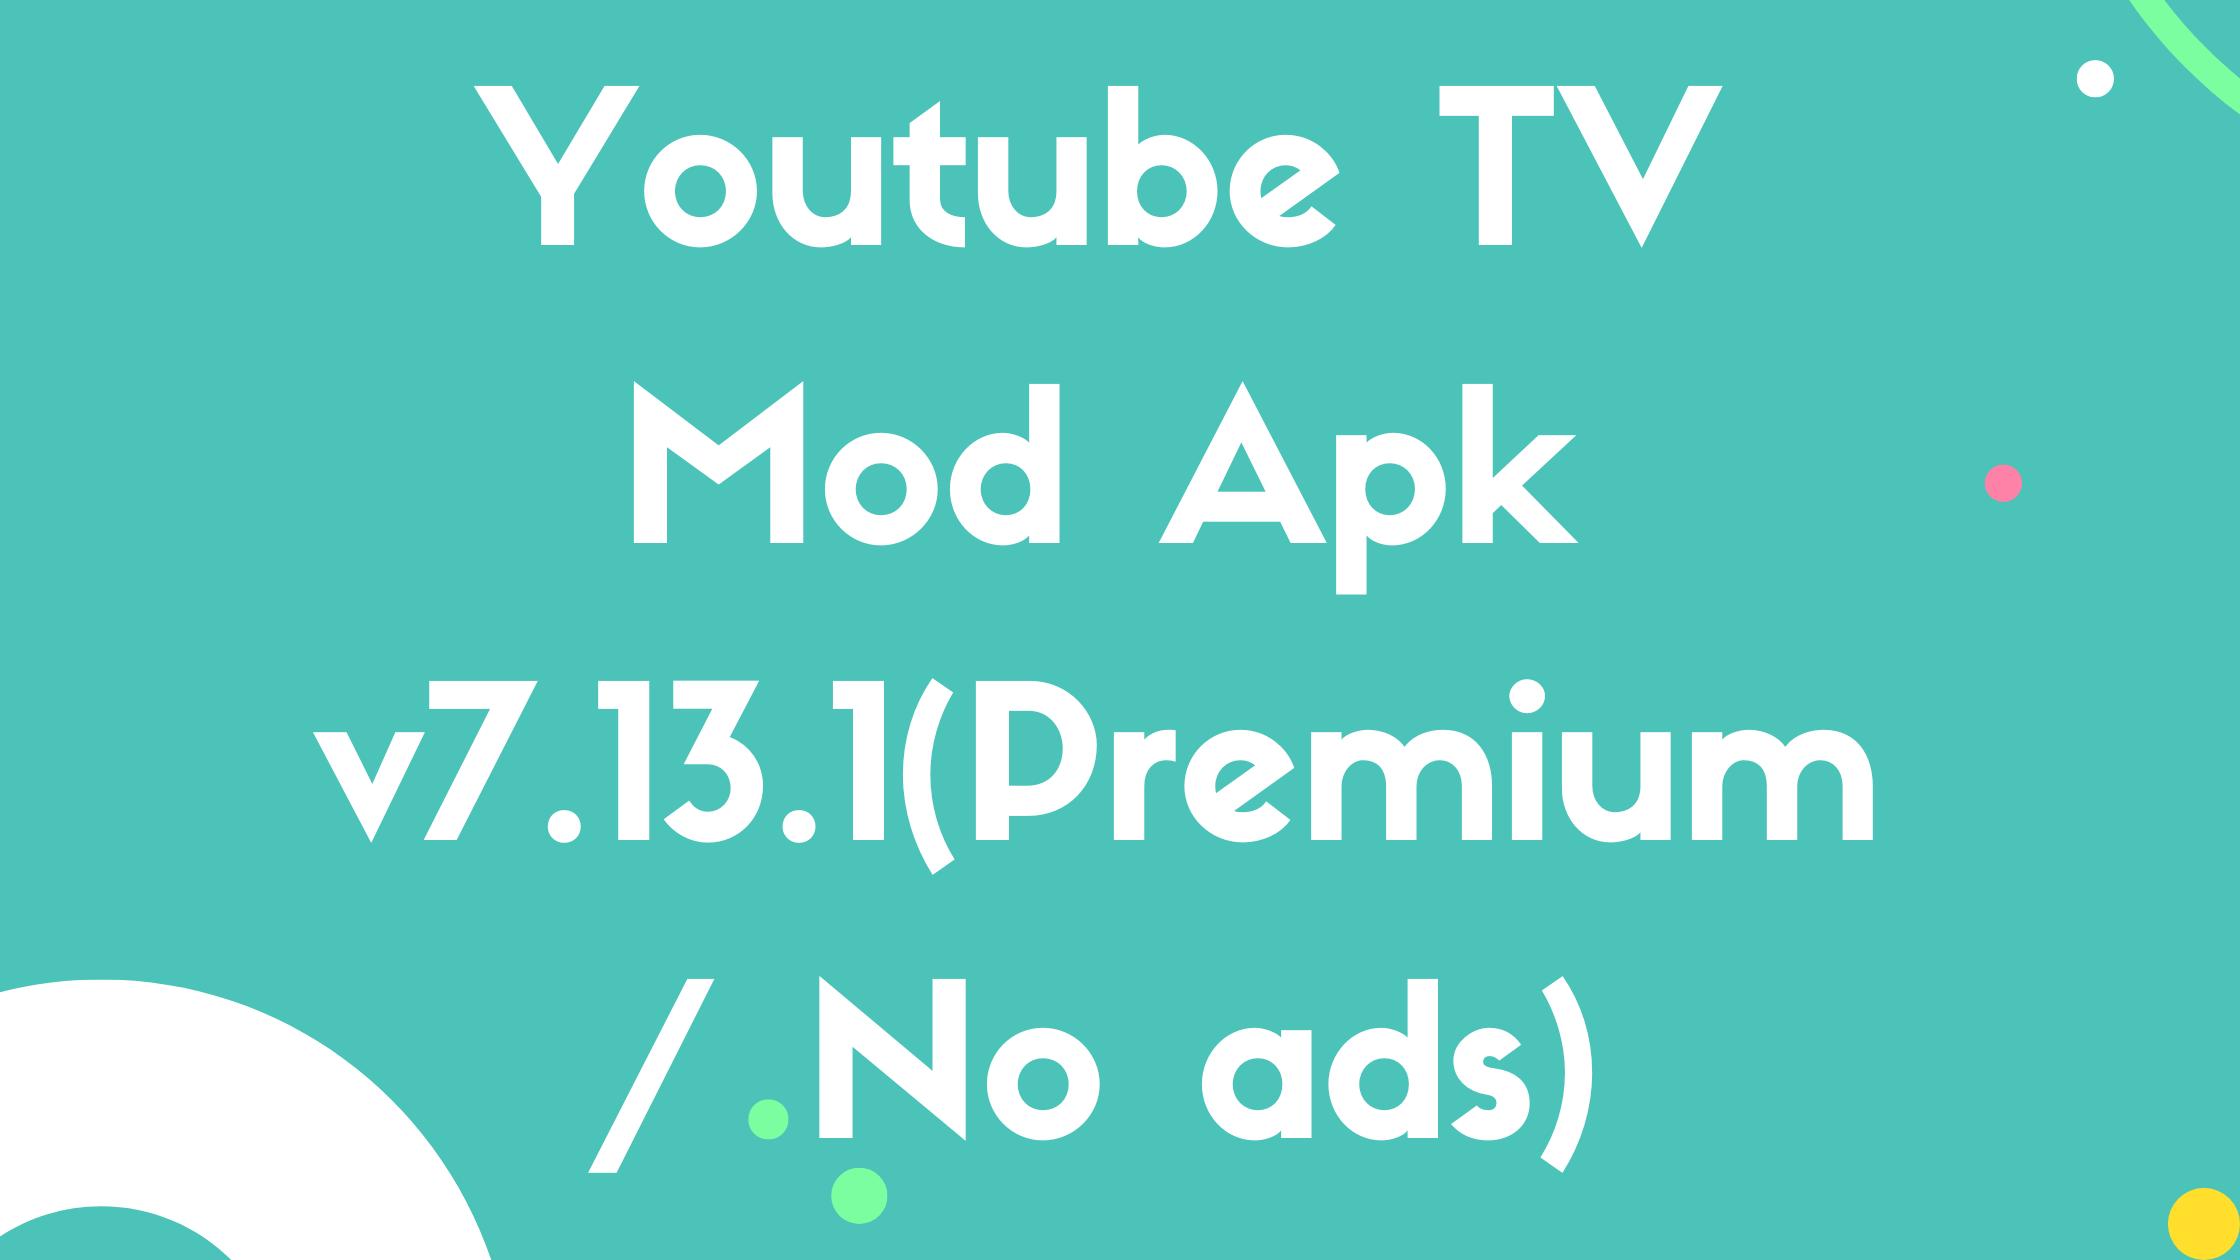 Youtube TV Mod Apk v7.13.1(Premium / No ads)